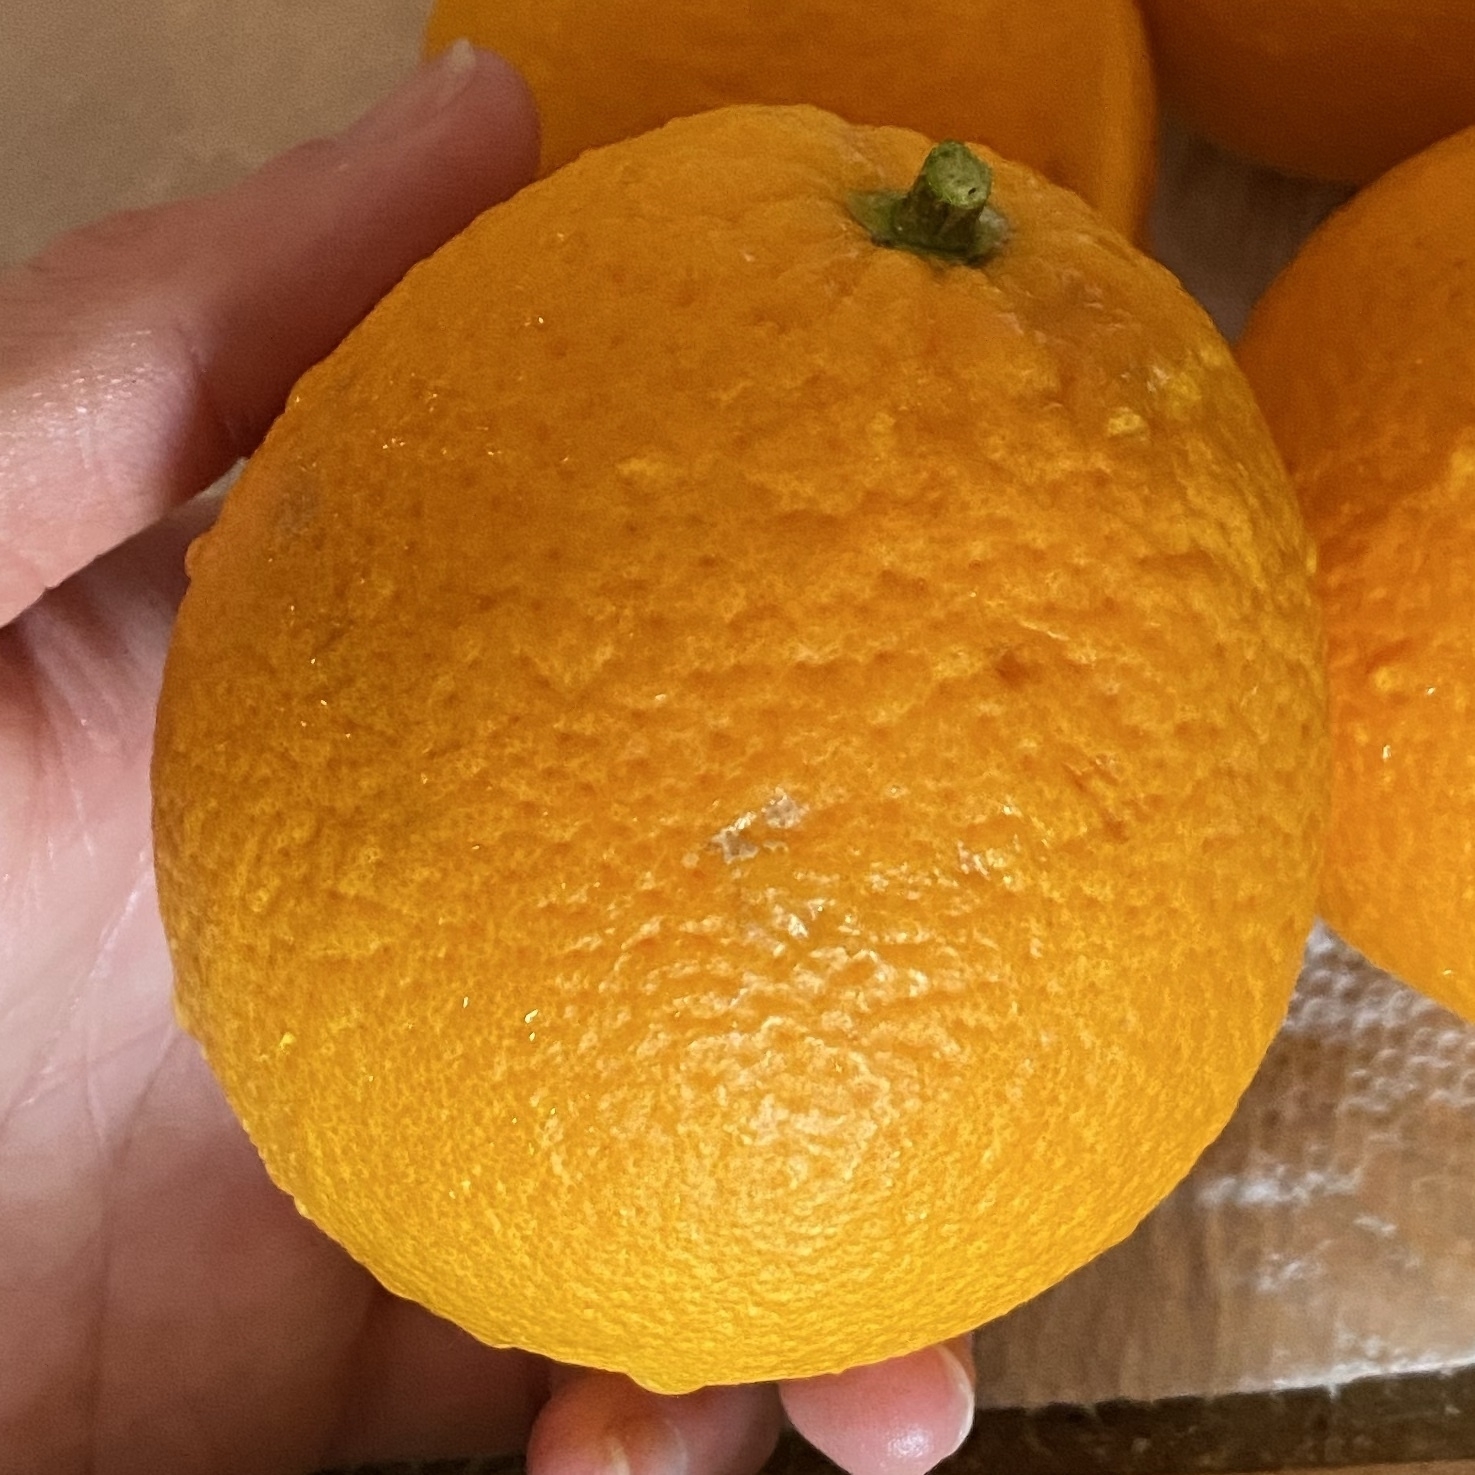 valencia orange in a hand